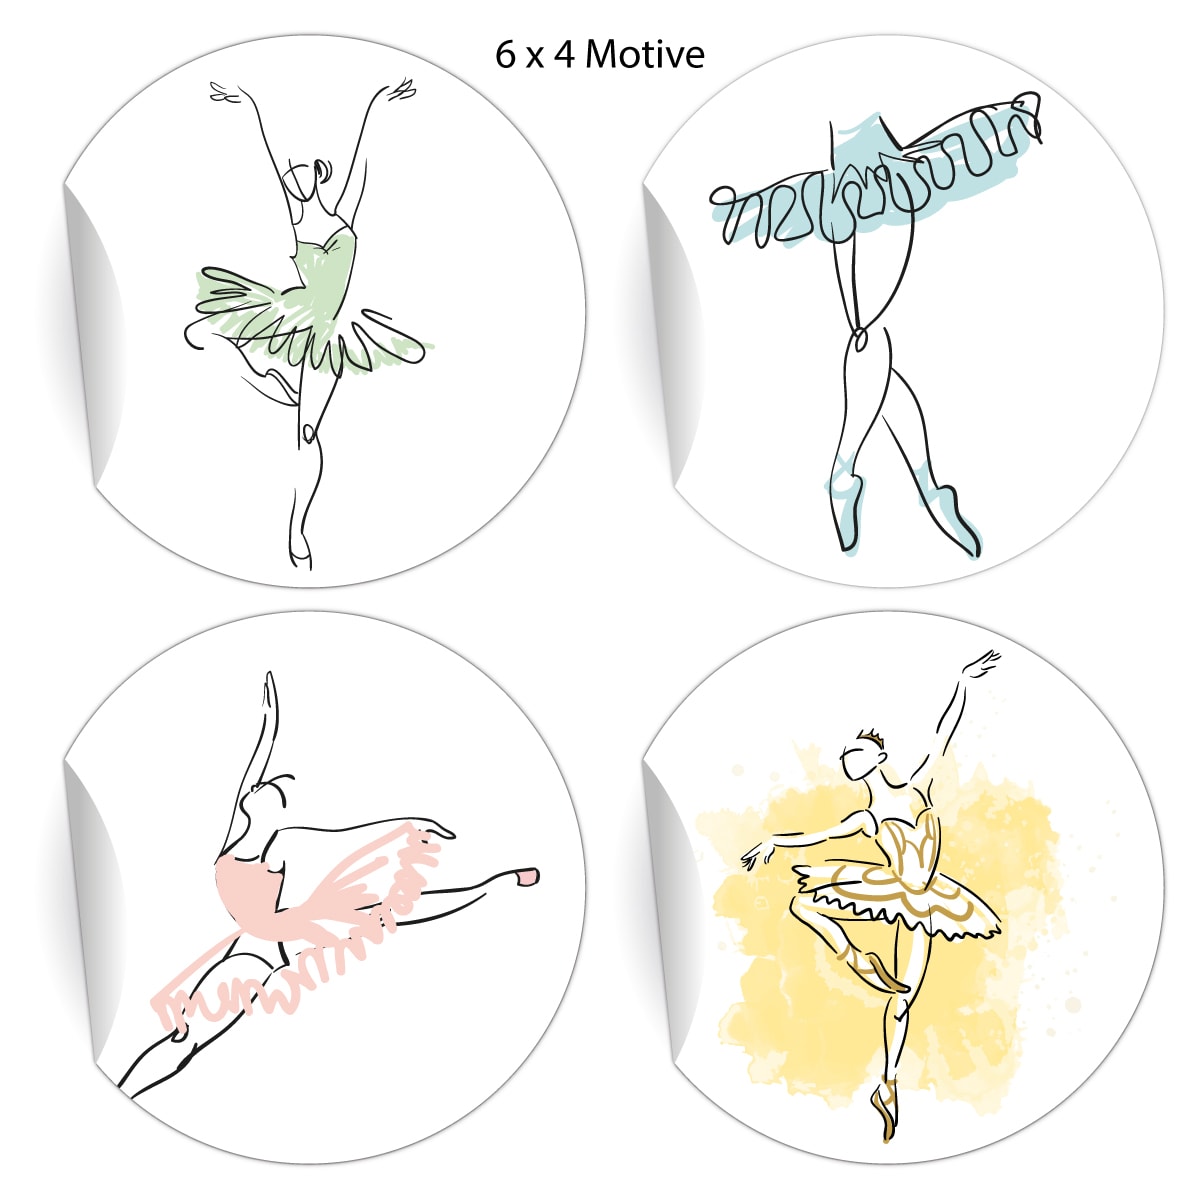 Kartenkaufrausch: elegante Ballett Aufkleber aus unserer Designer Papeterie in weiß